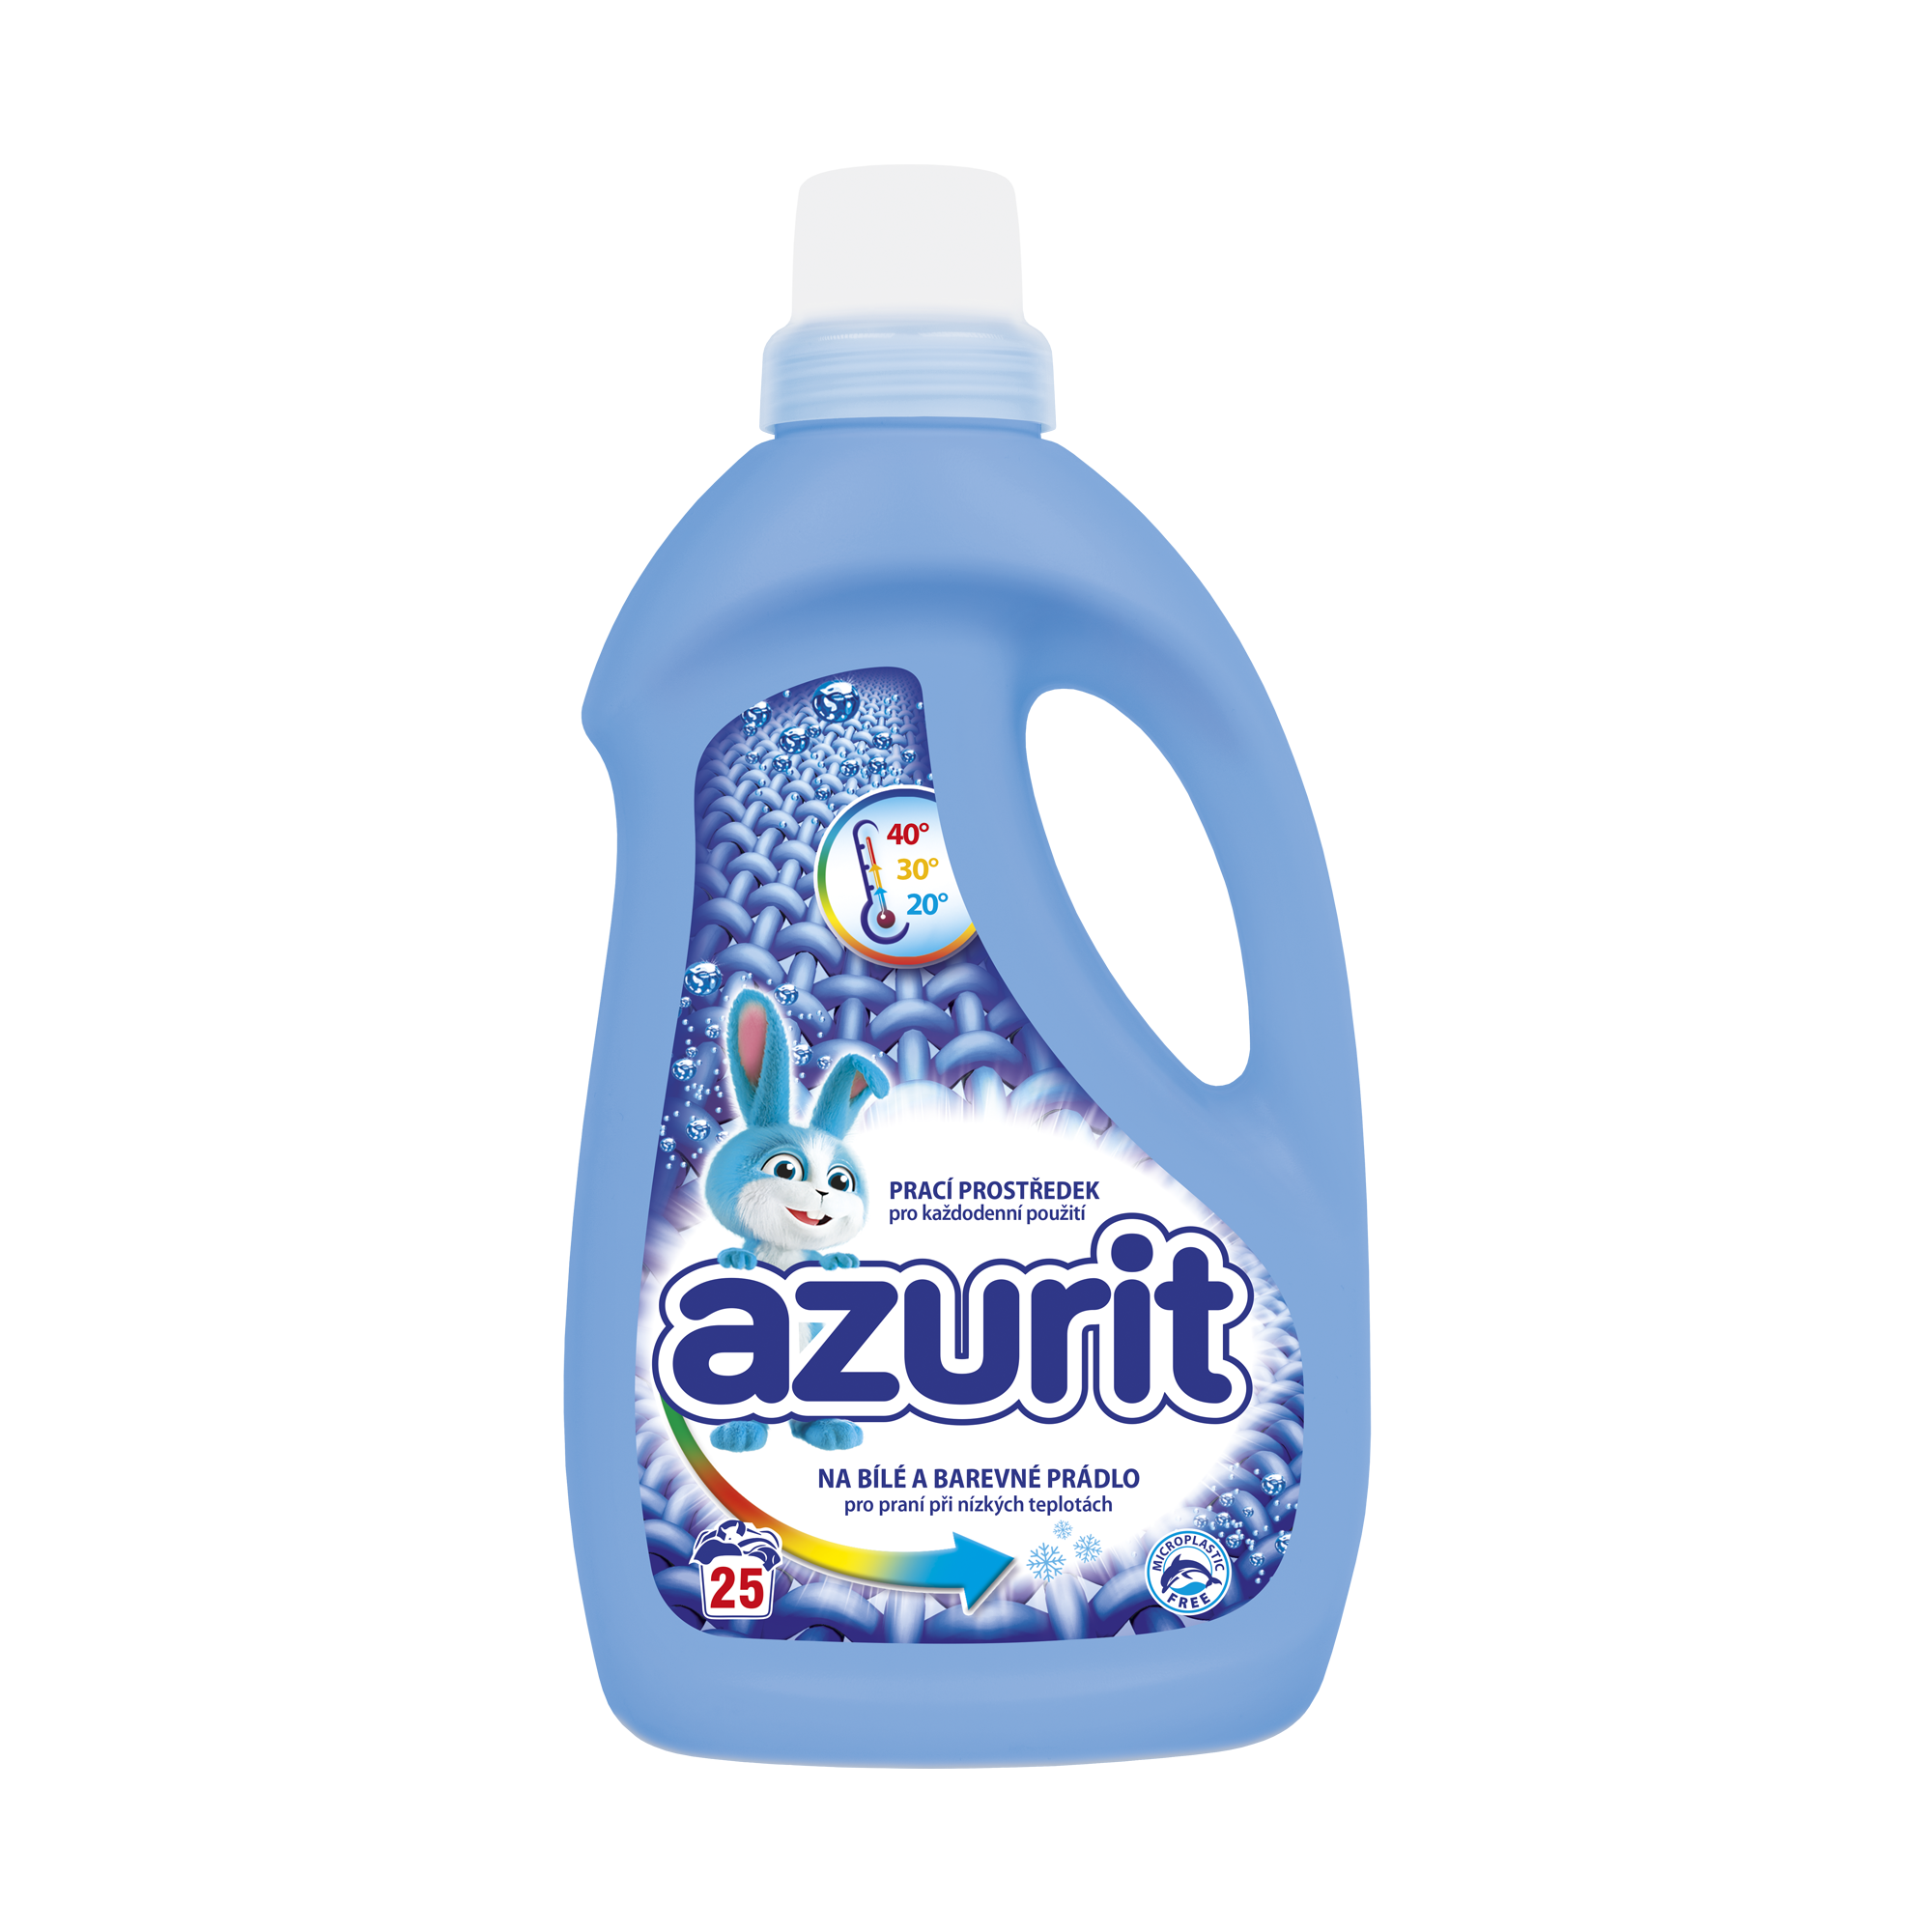 Azurit-1l-bile-a-barevne